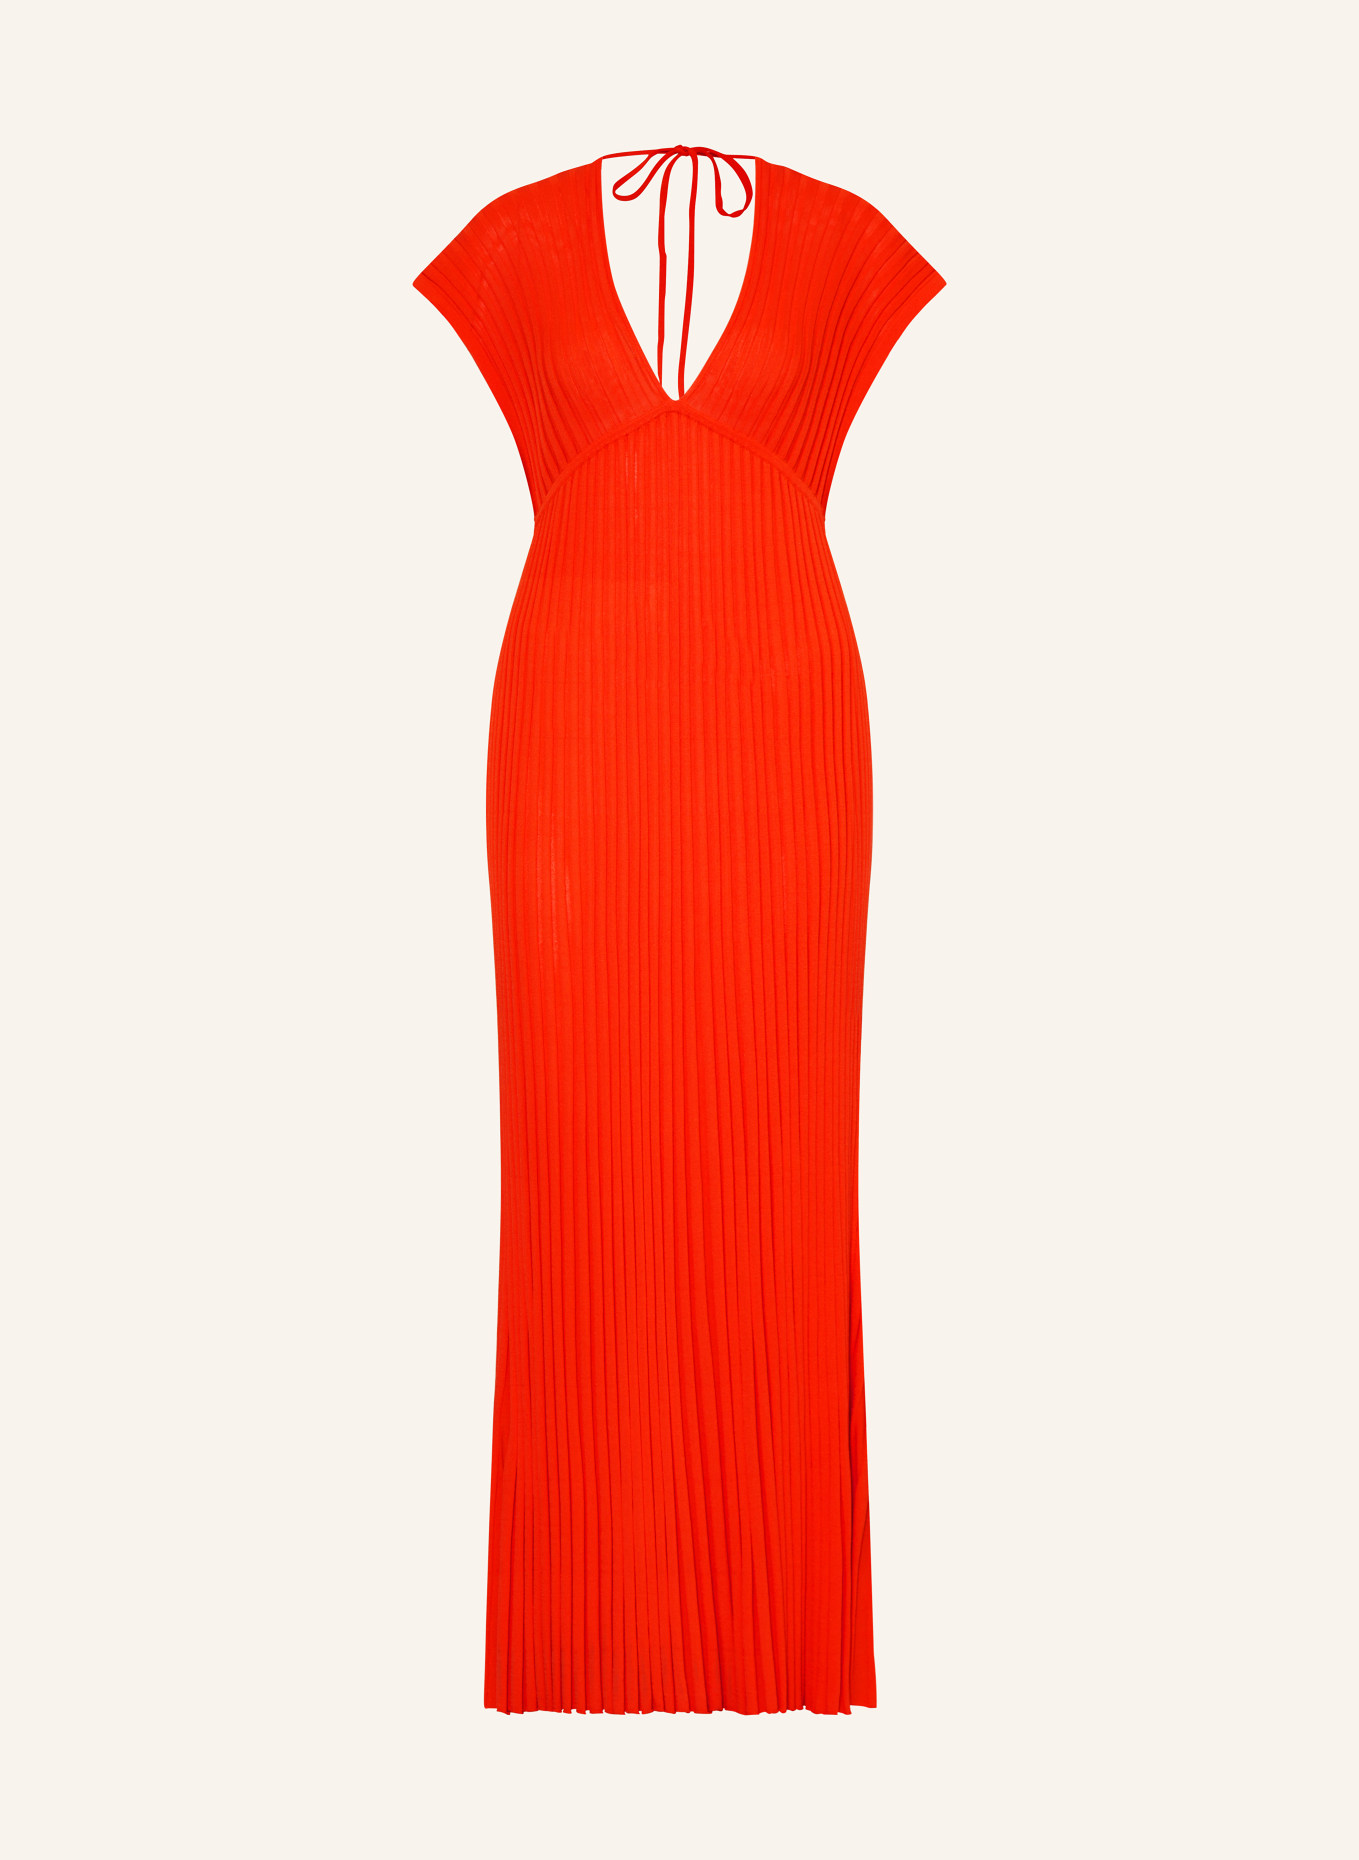 GESTUZ Knit dress PHILANAGZ, Color: RED (Image 1)